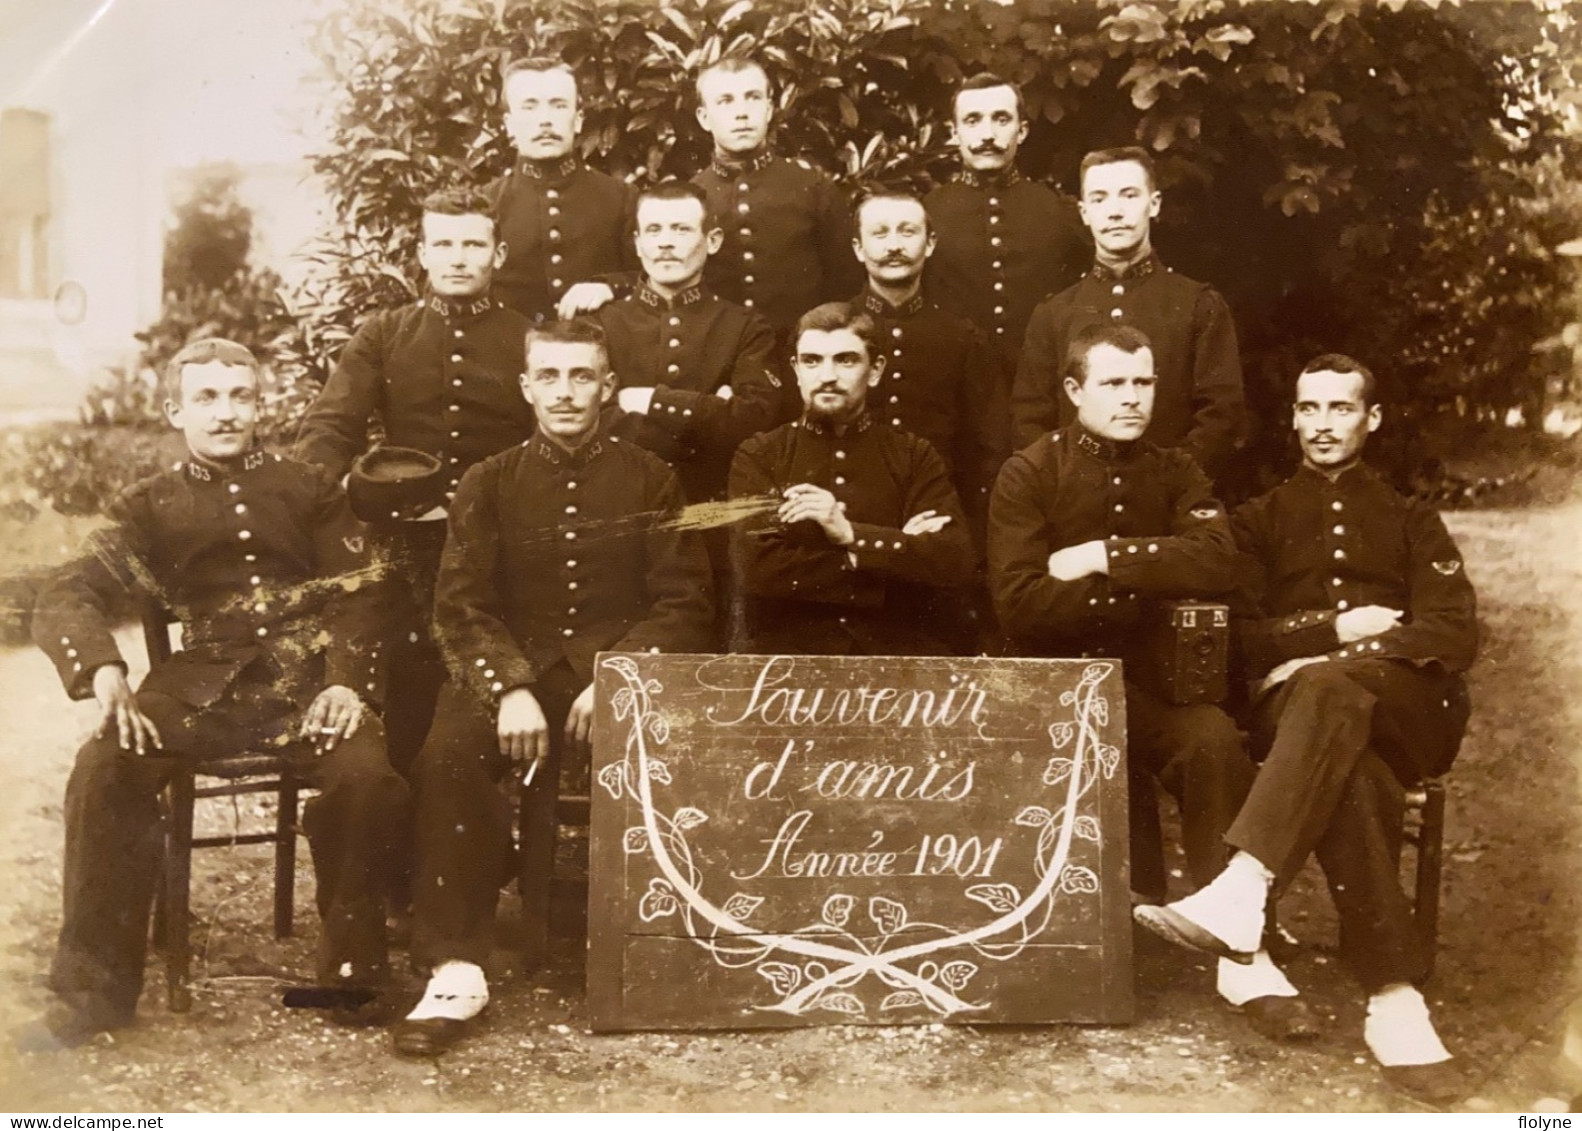 Belley - Photo Ancienne Albuminée Circa 1901 - Soldats Militaires Du 133ème Régiment D’infanterie - Militaria - Belley